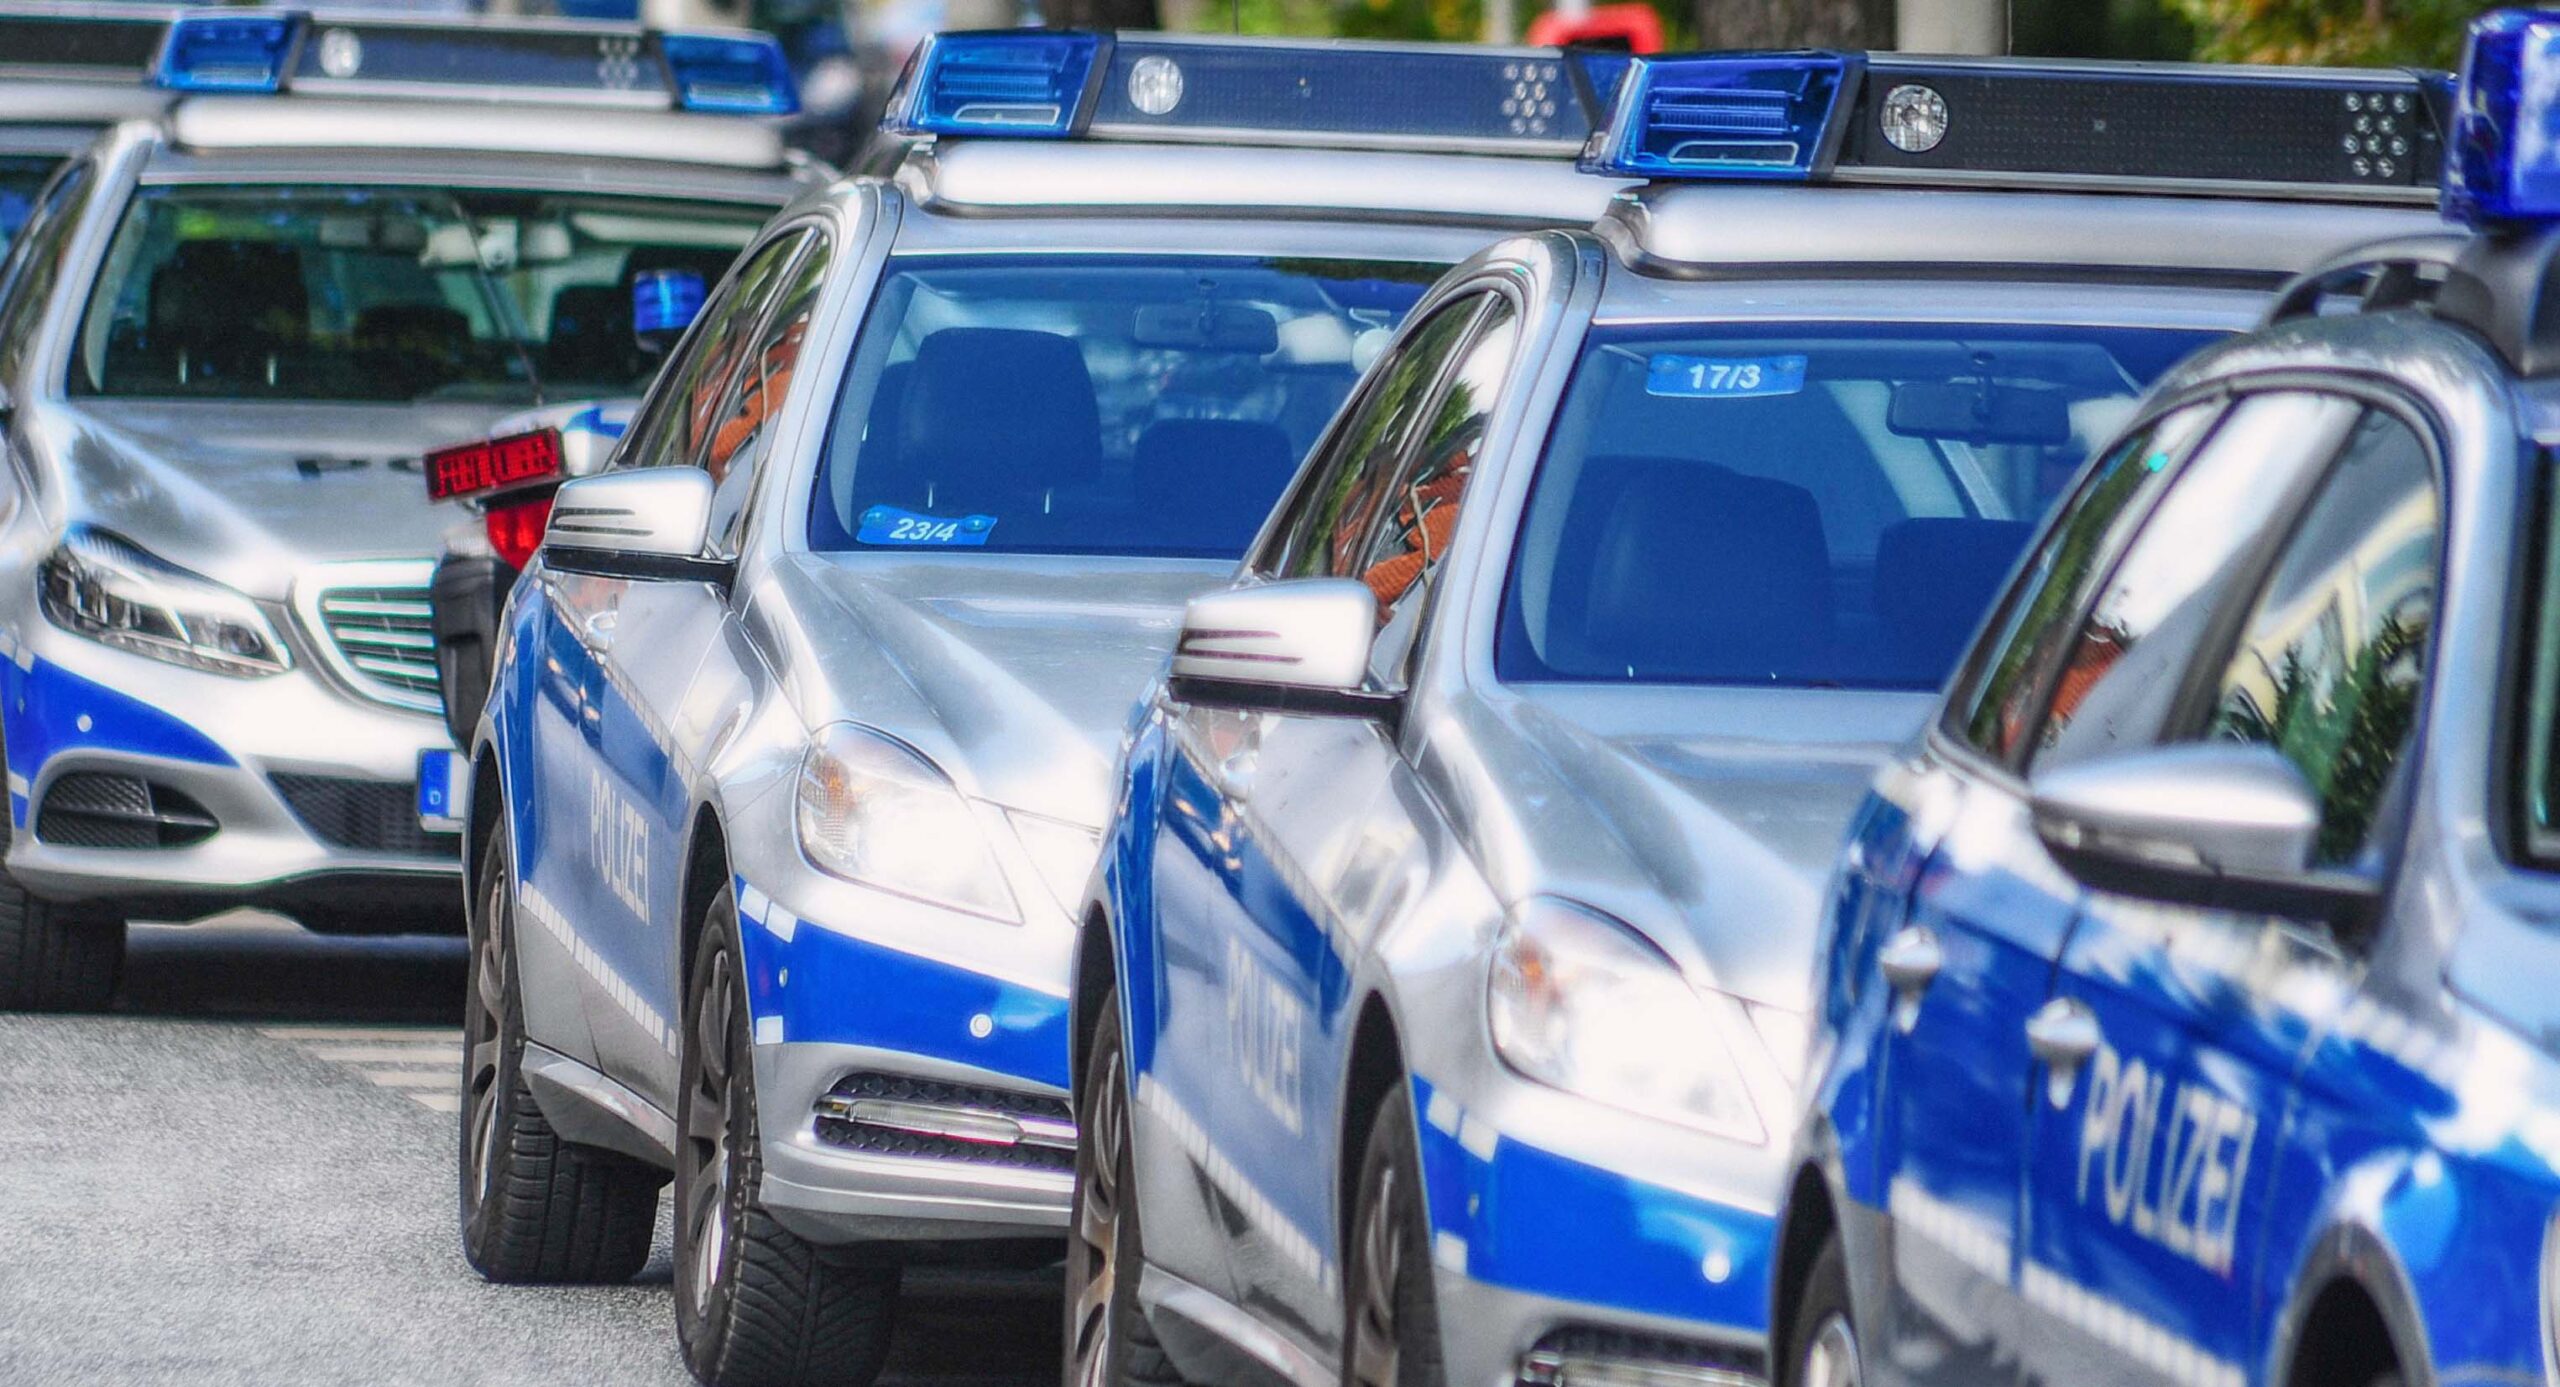 Streit an Schule nahe Hamburg – Großeinsatz der Polizei